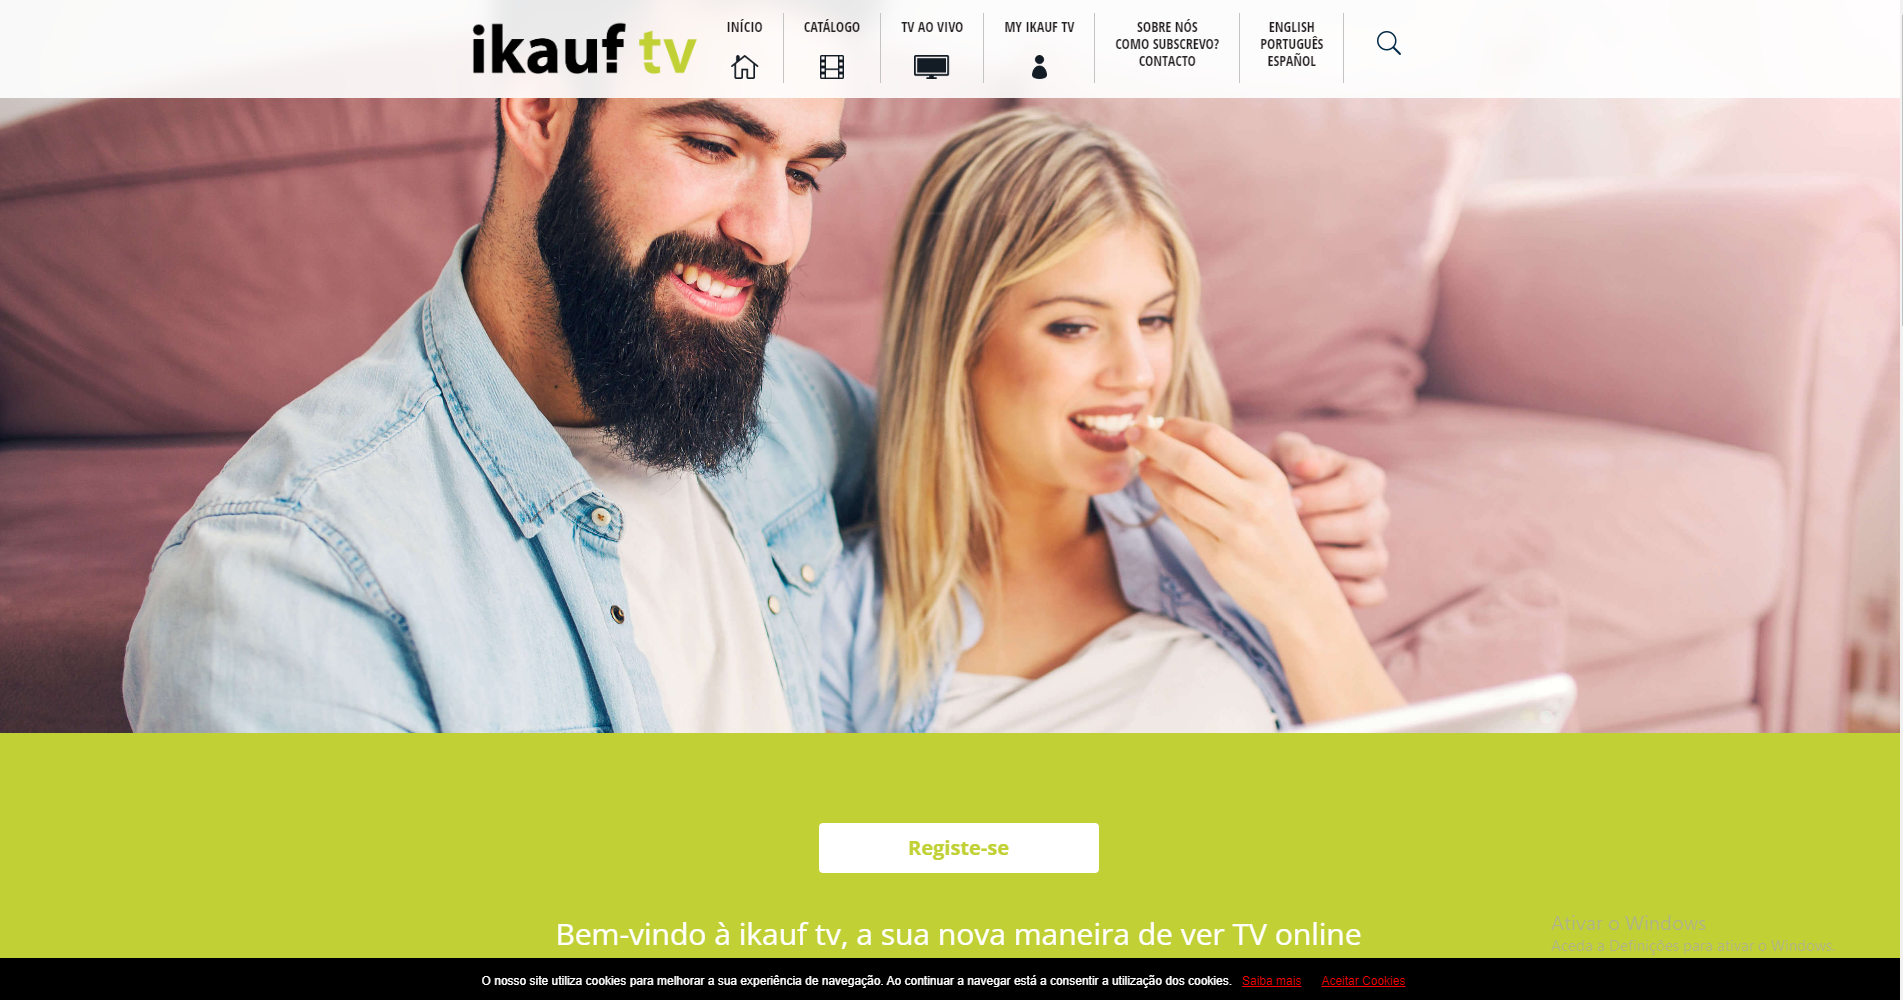 Website for online video platform IkaufTv